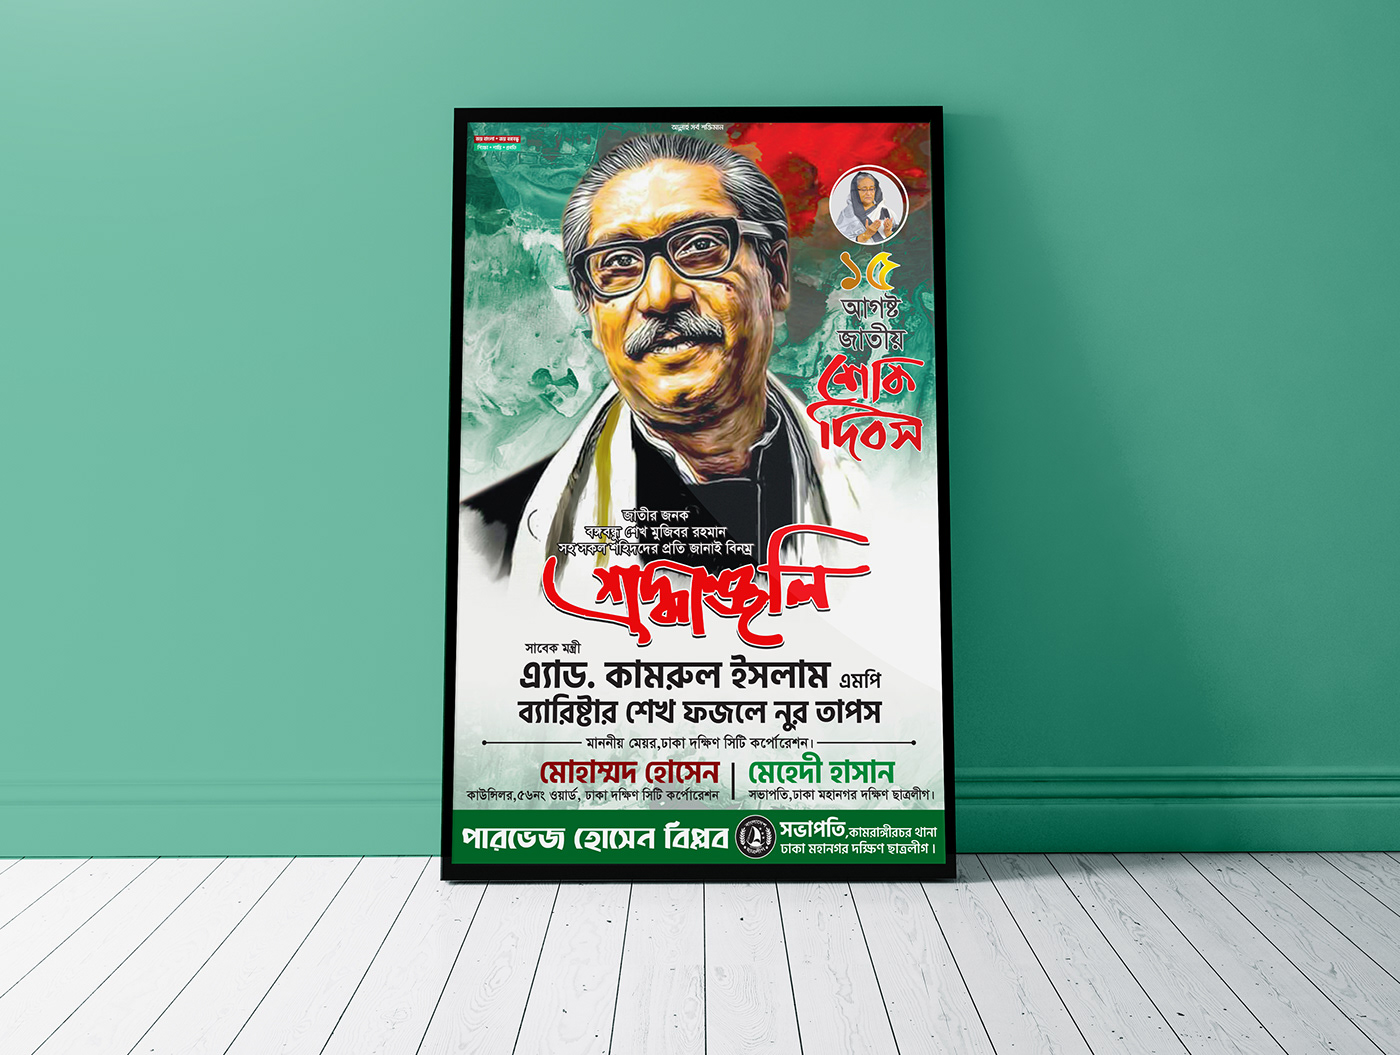 ১৫ই আগষ্ট জাতীয় শোক দিবস ১৫ই আগষ্ট বাংলাদেশ Banner Design 2020 Bongobondhu poletical poster Sheikh Mujib জাতীয় শোক দিবস রাজনৈতিক পোষ্টার